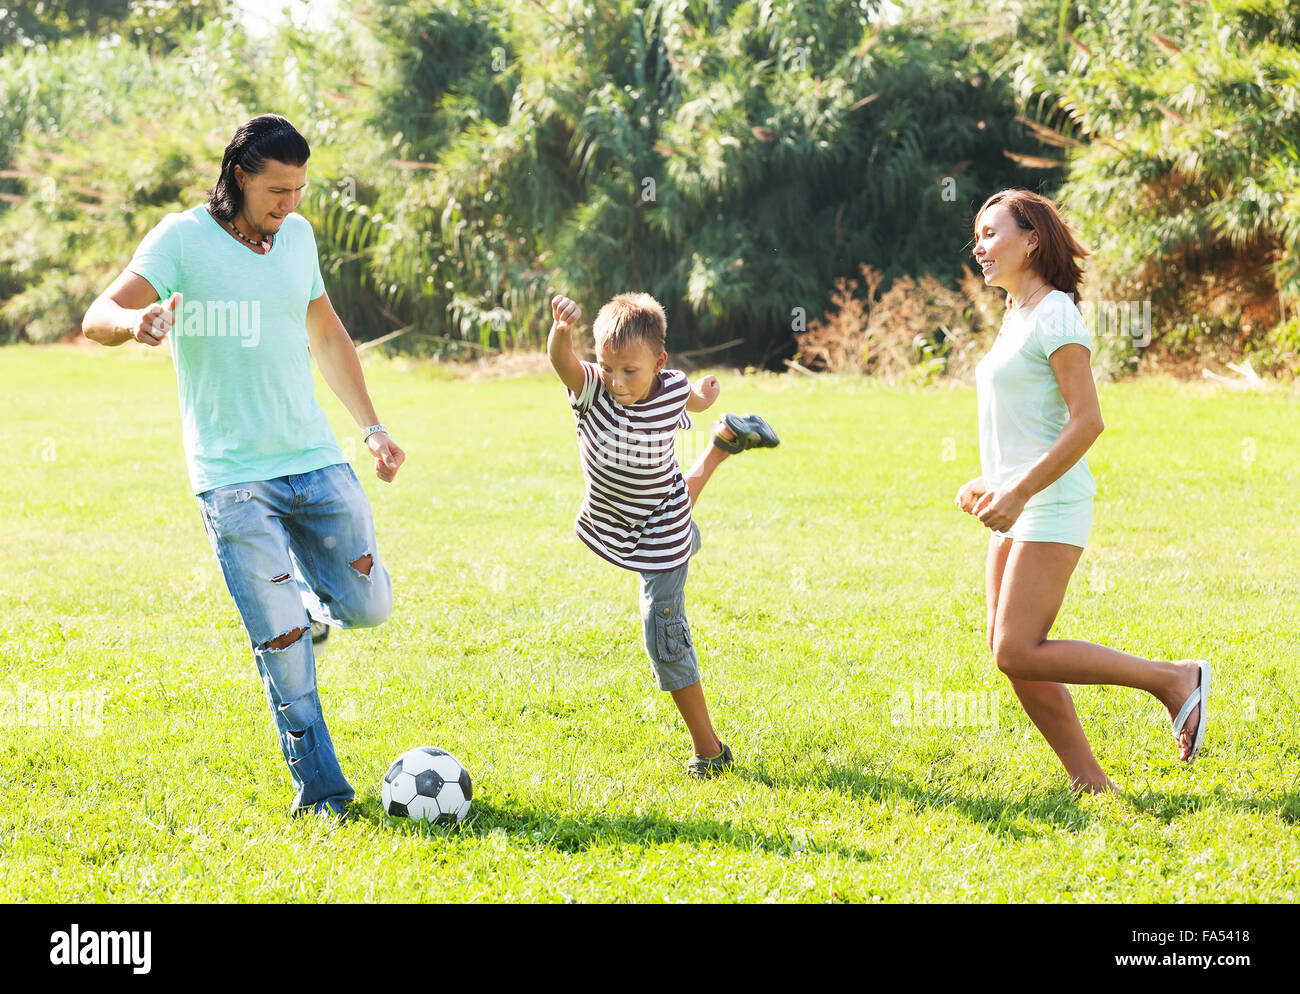 Paar mittleren Alters und Teenager spielen mit Fußball im Sommerpark Stockfoto